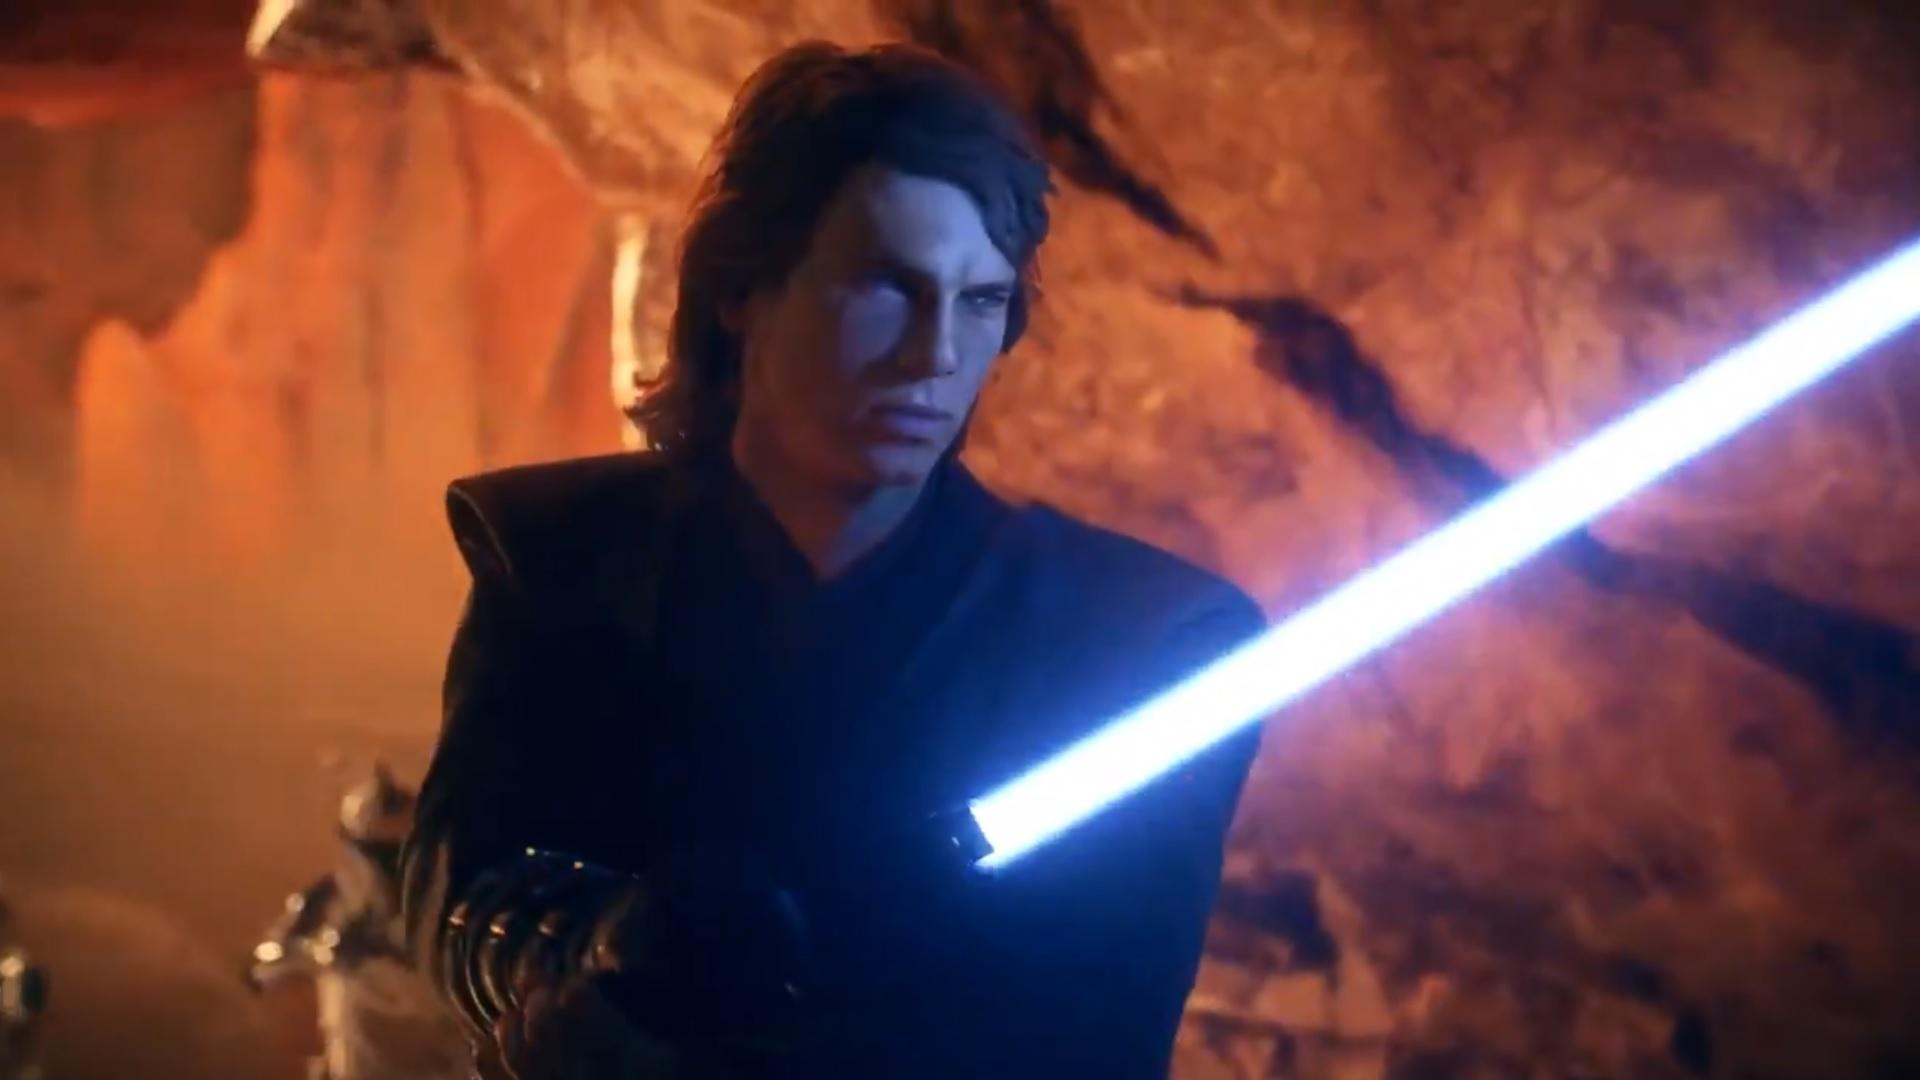 Star Wars Battlefront 2 is adding Anakin Skywalker to